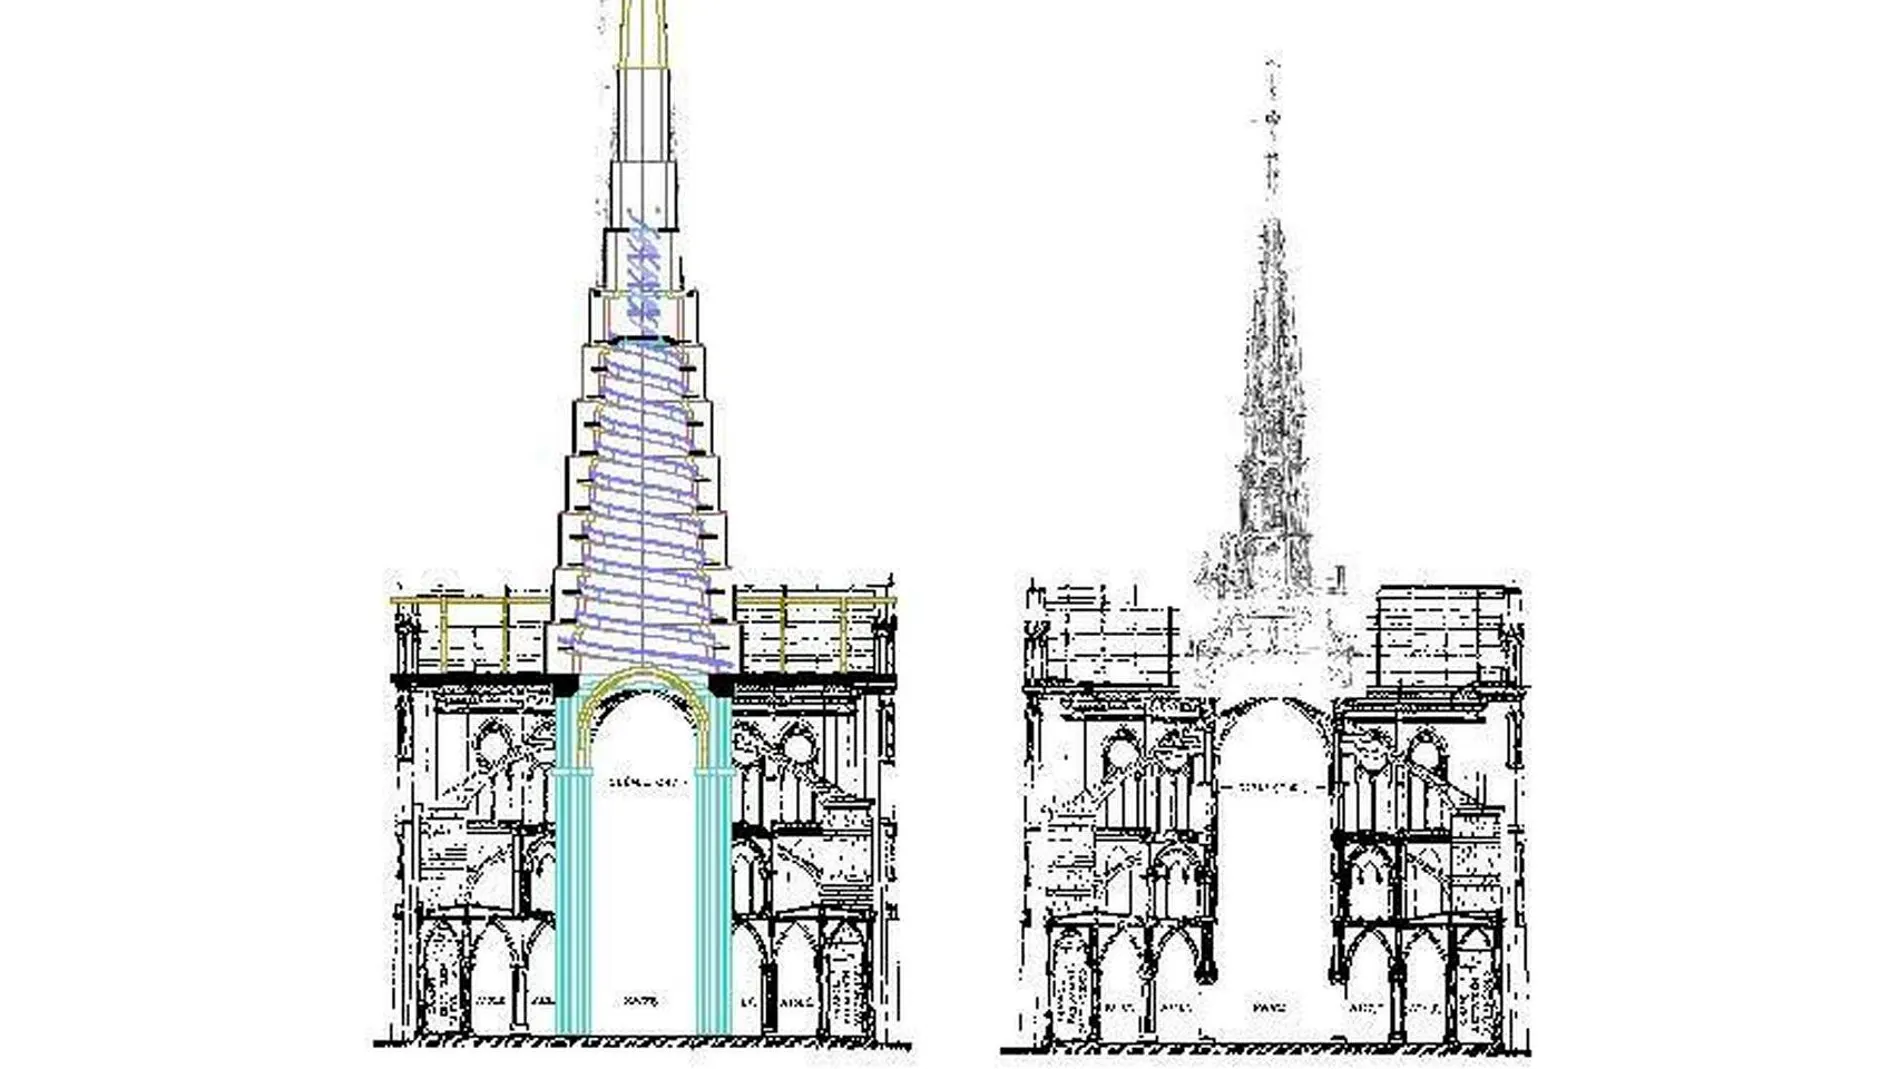 Un equipo de arquitectos españoles presenta un proyecto para reconstruir la catedral